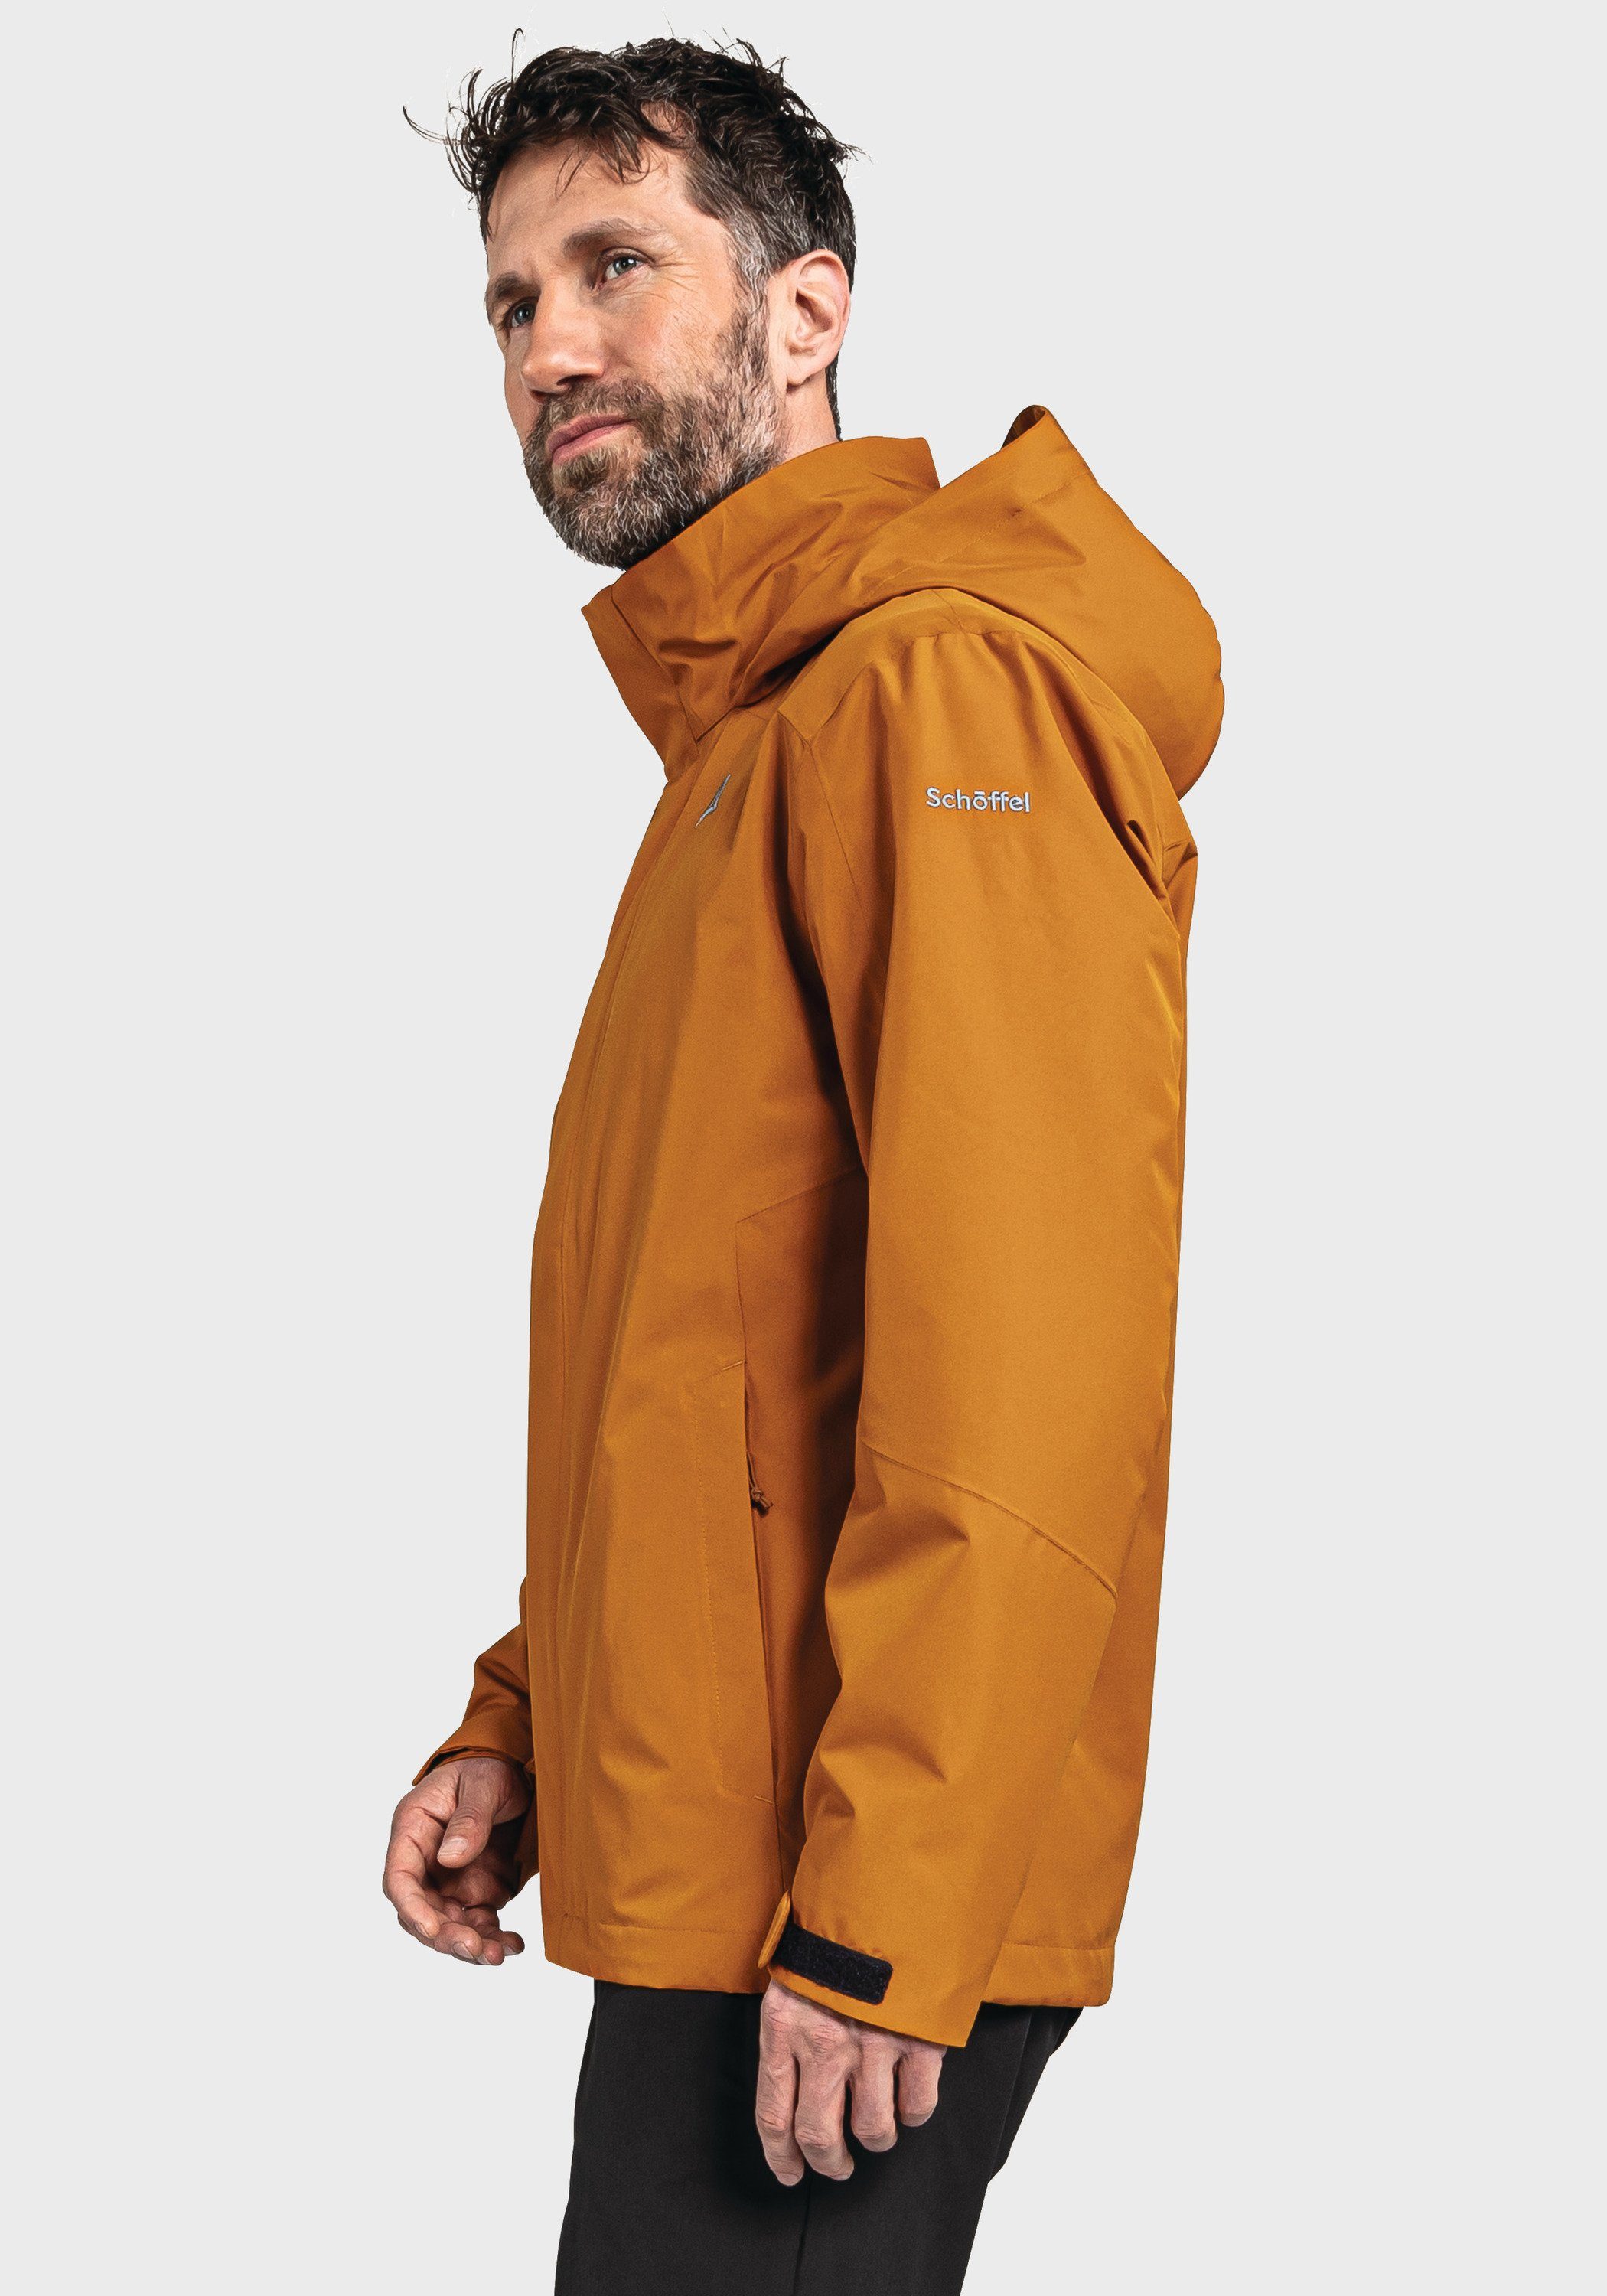 Schöffel Doppeljacke Jacket 3in1 orange M Partinello